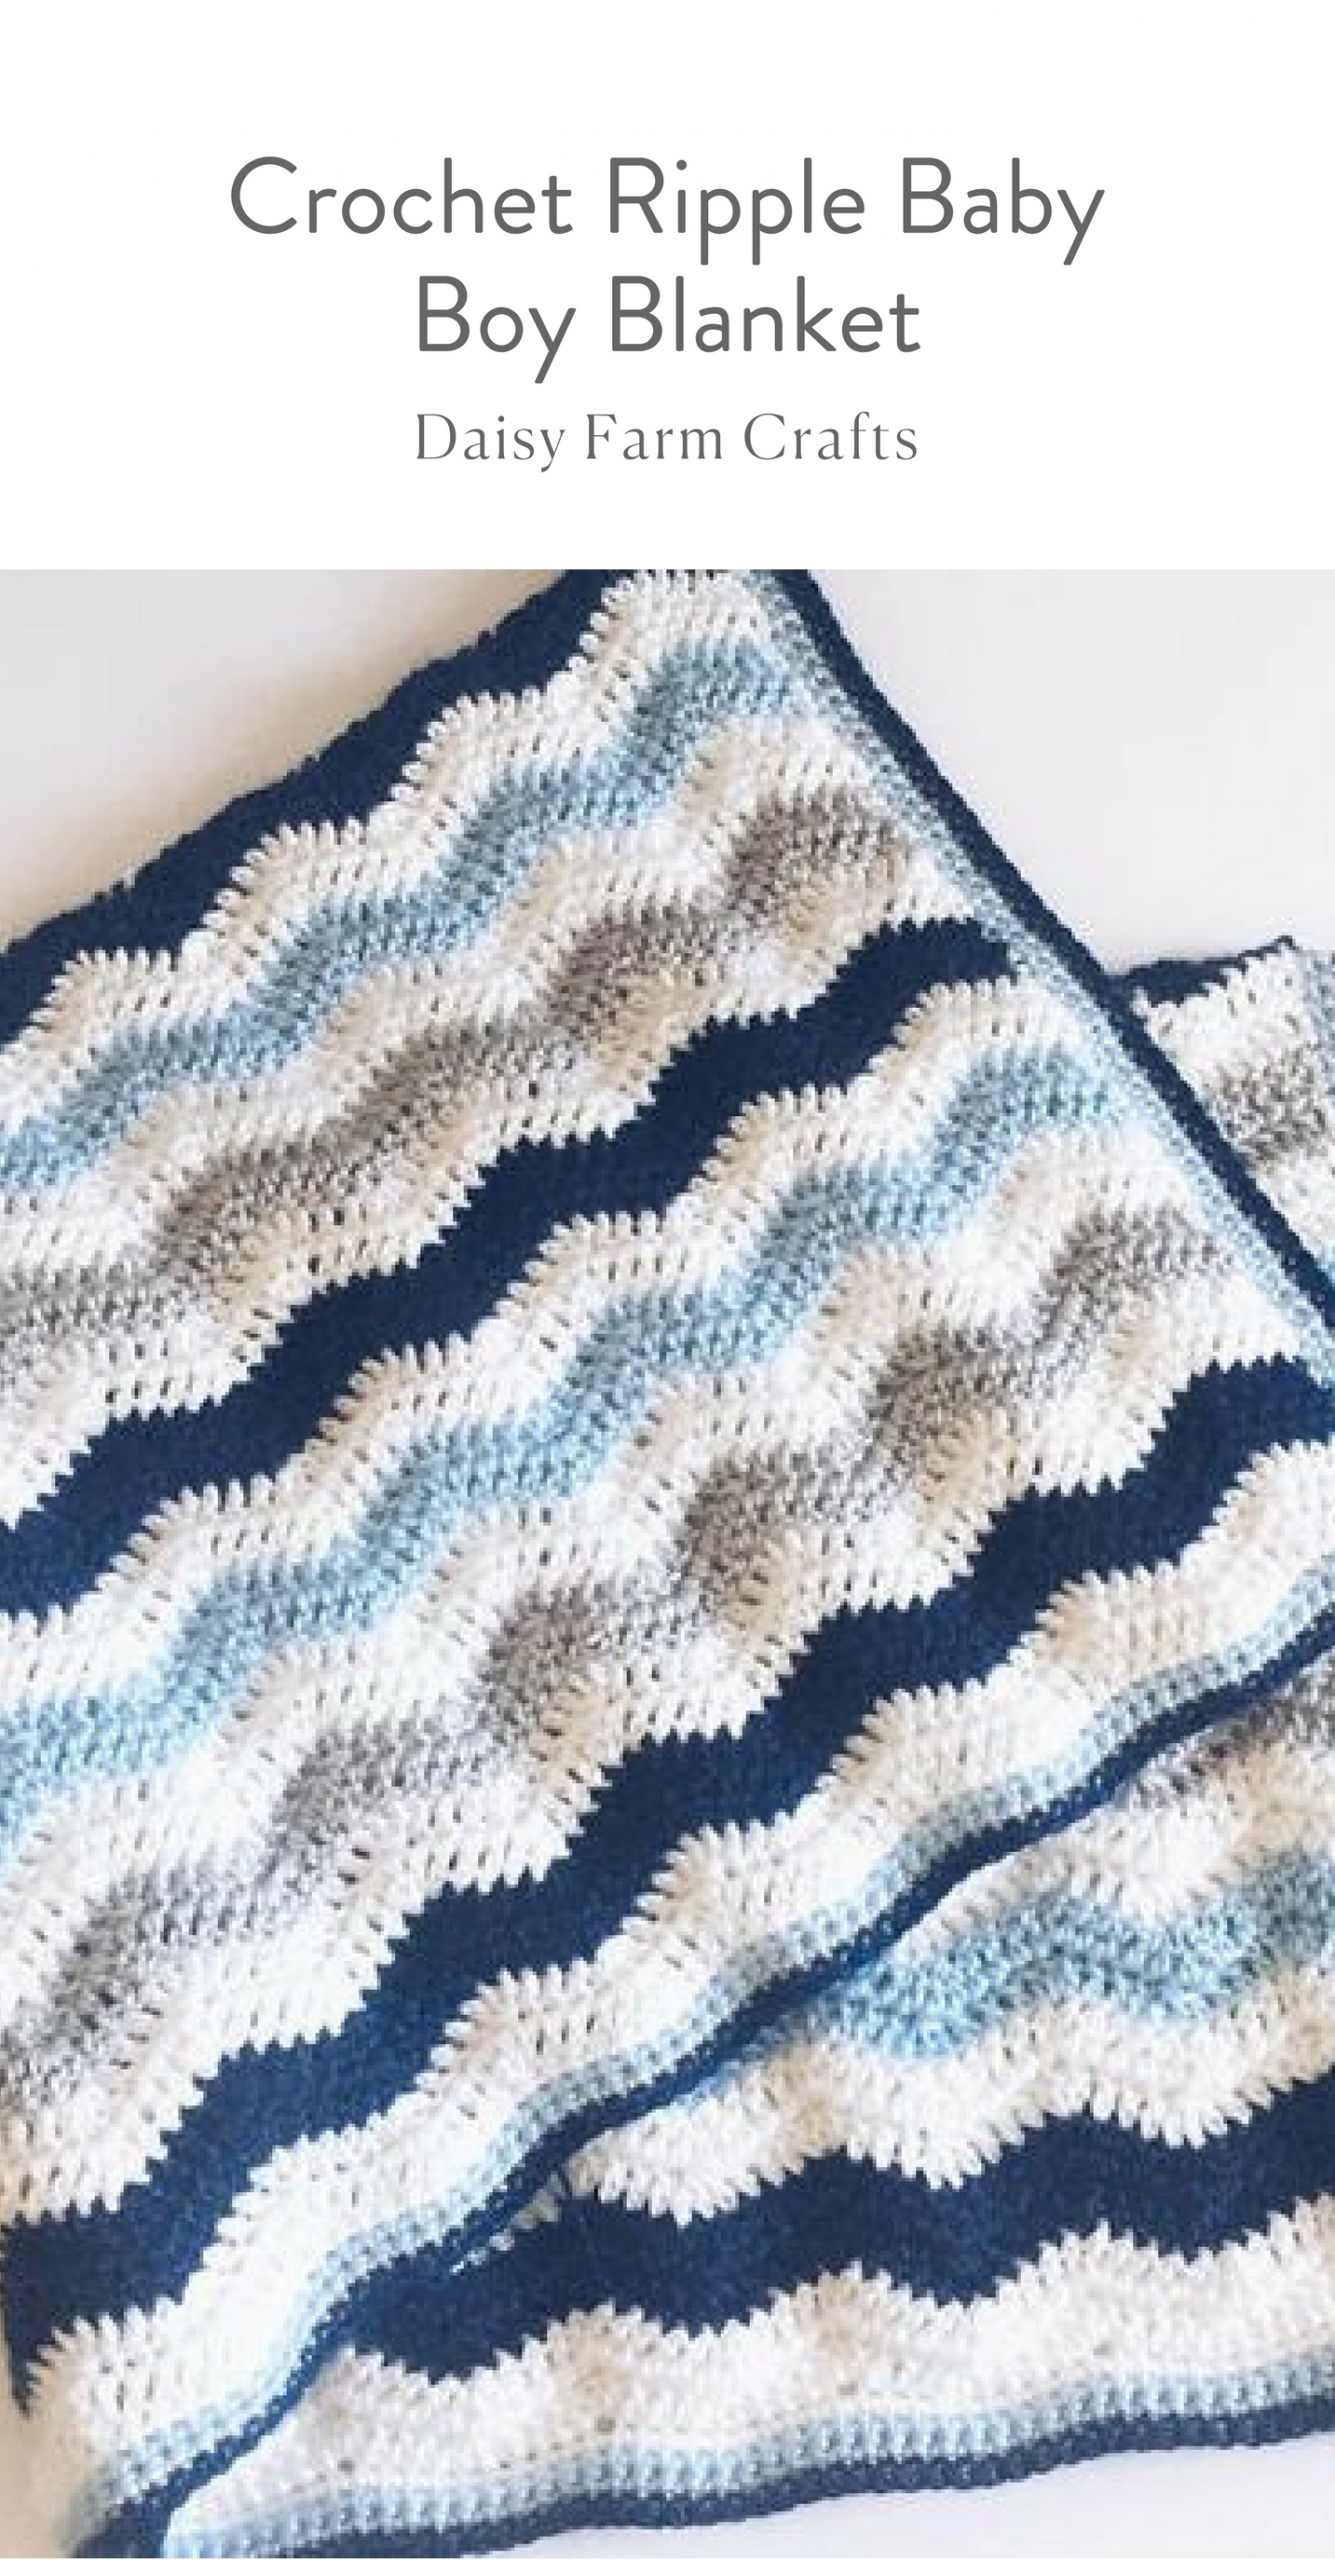 Free Pattern - Crochet Ripple Baby Boy Blanket